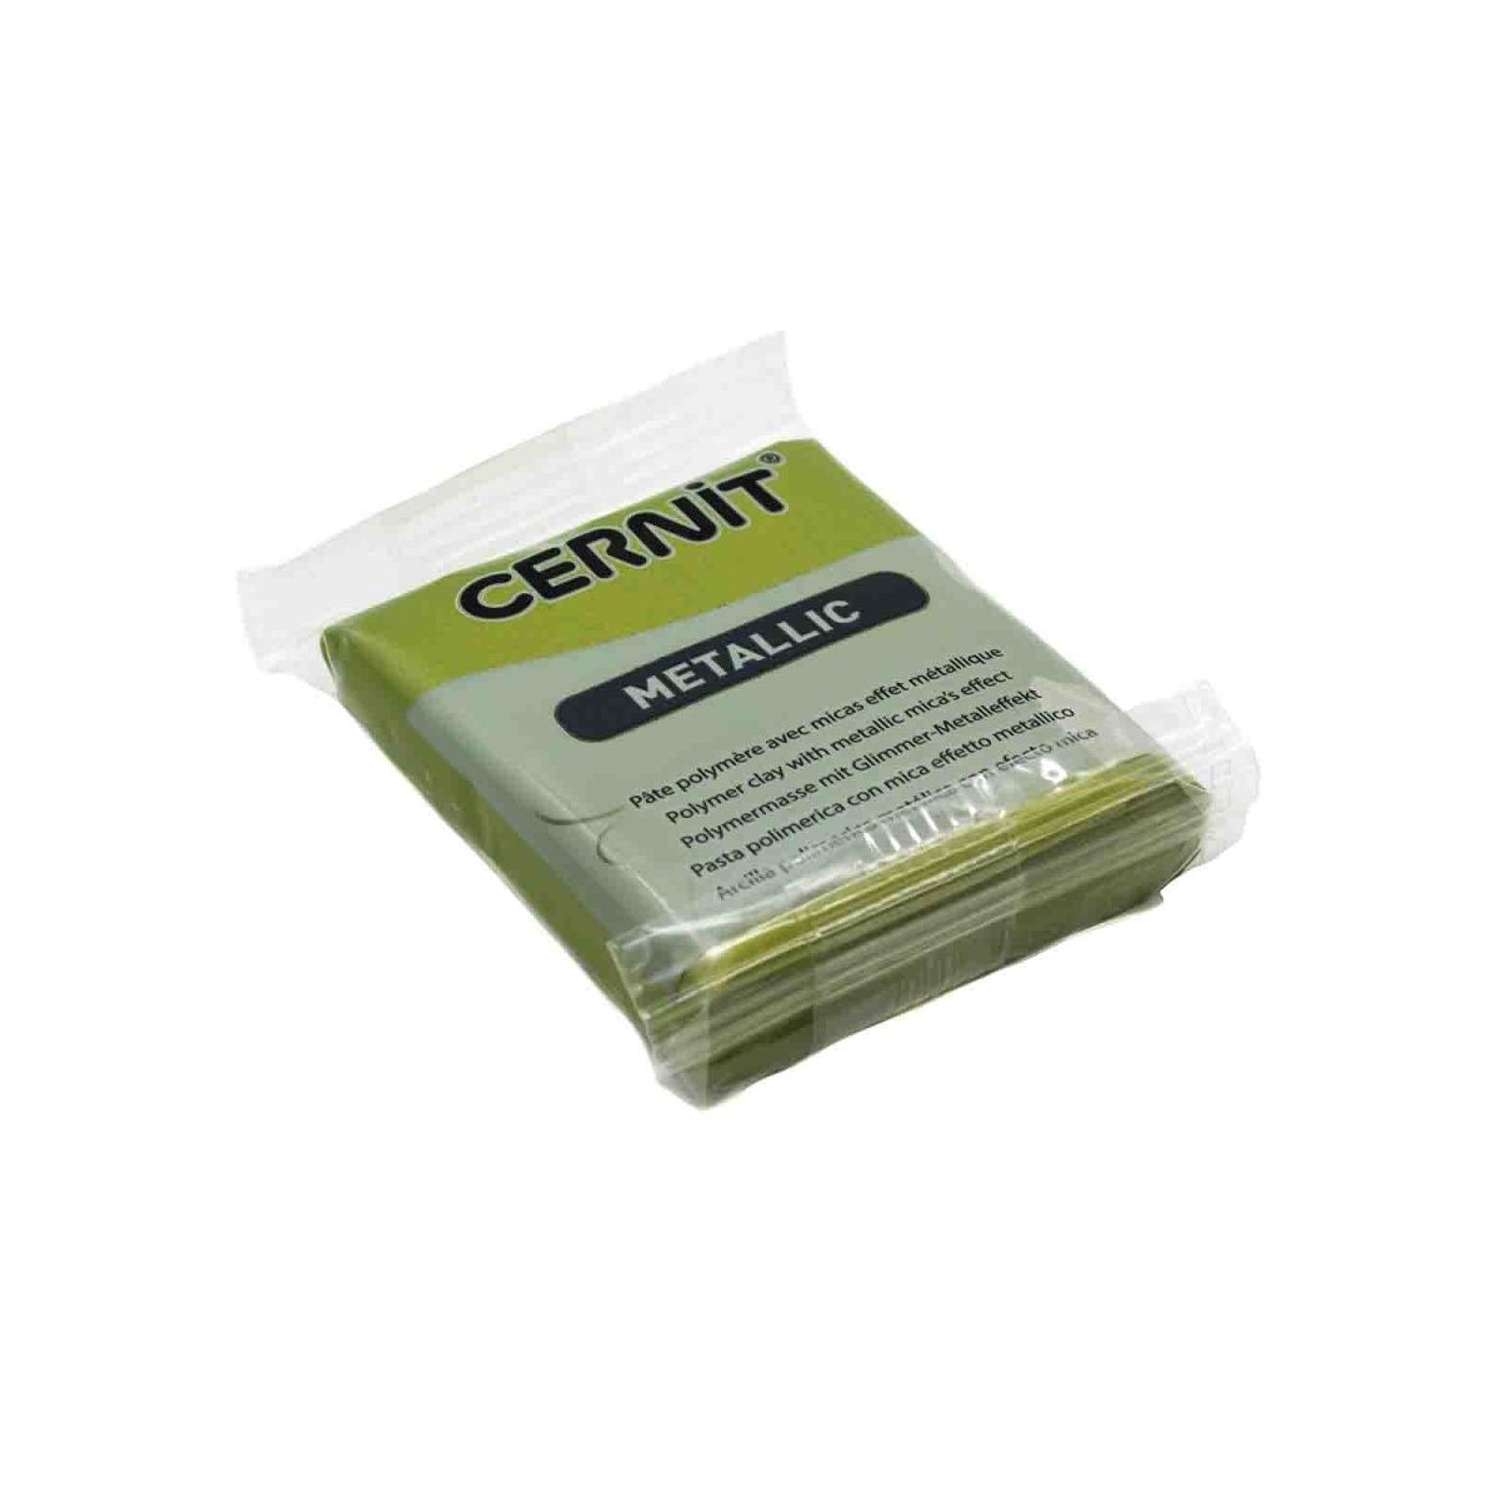 Полимерная глина Cernit пластика запекаемая Цернит metallic 56 гр CE0870058 - фото 8